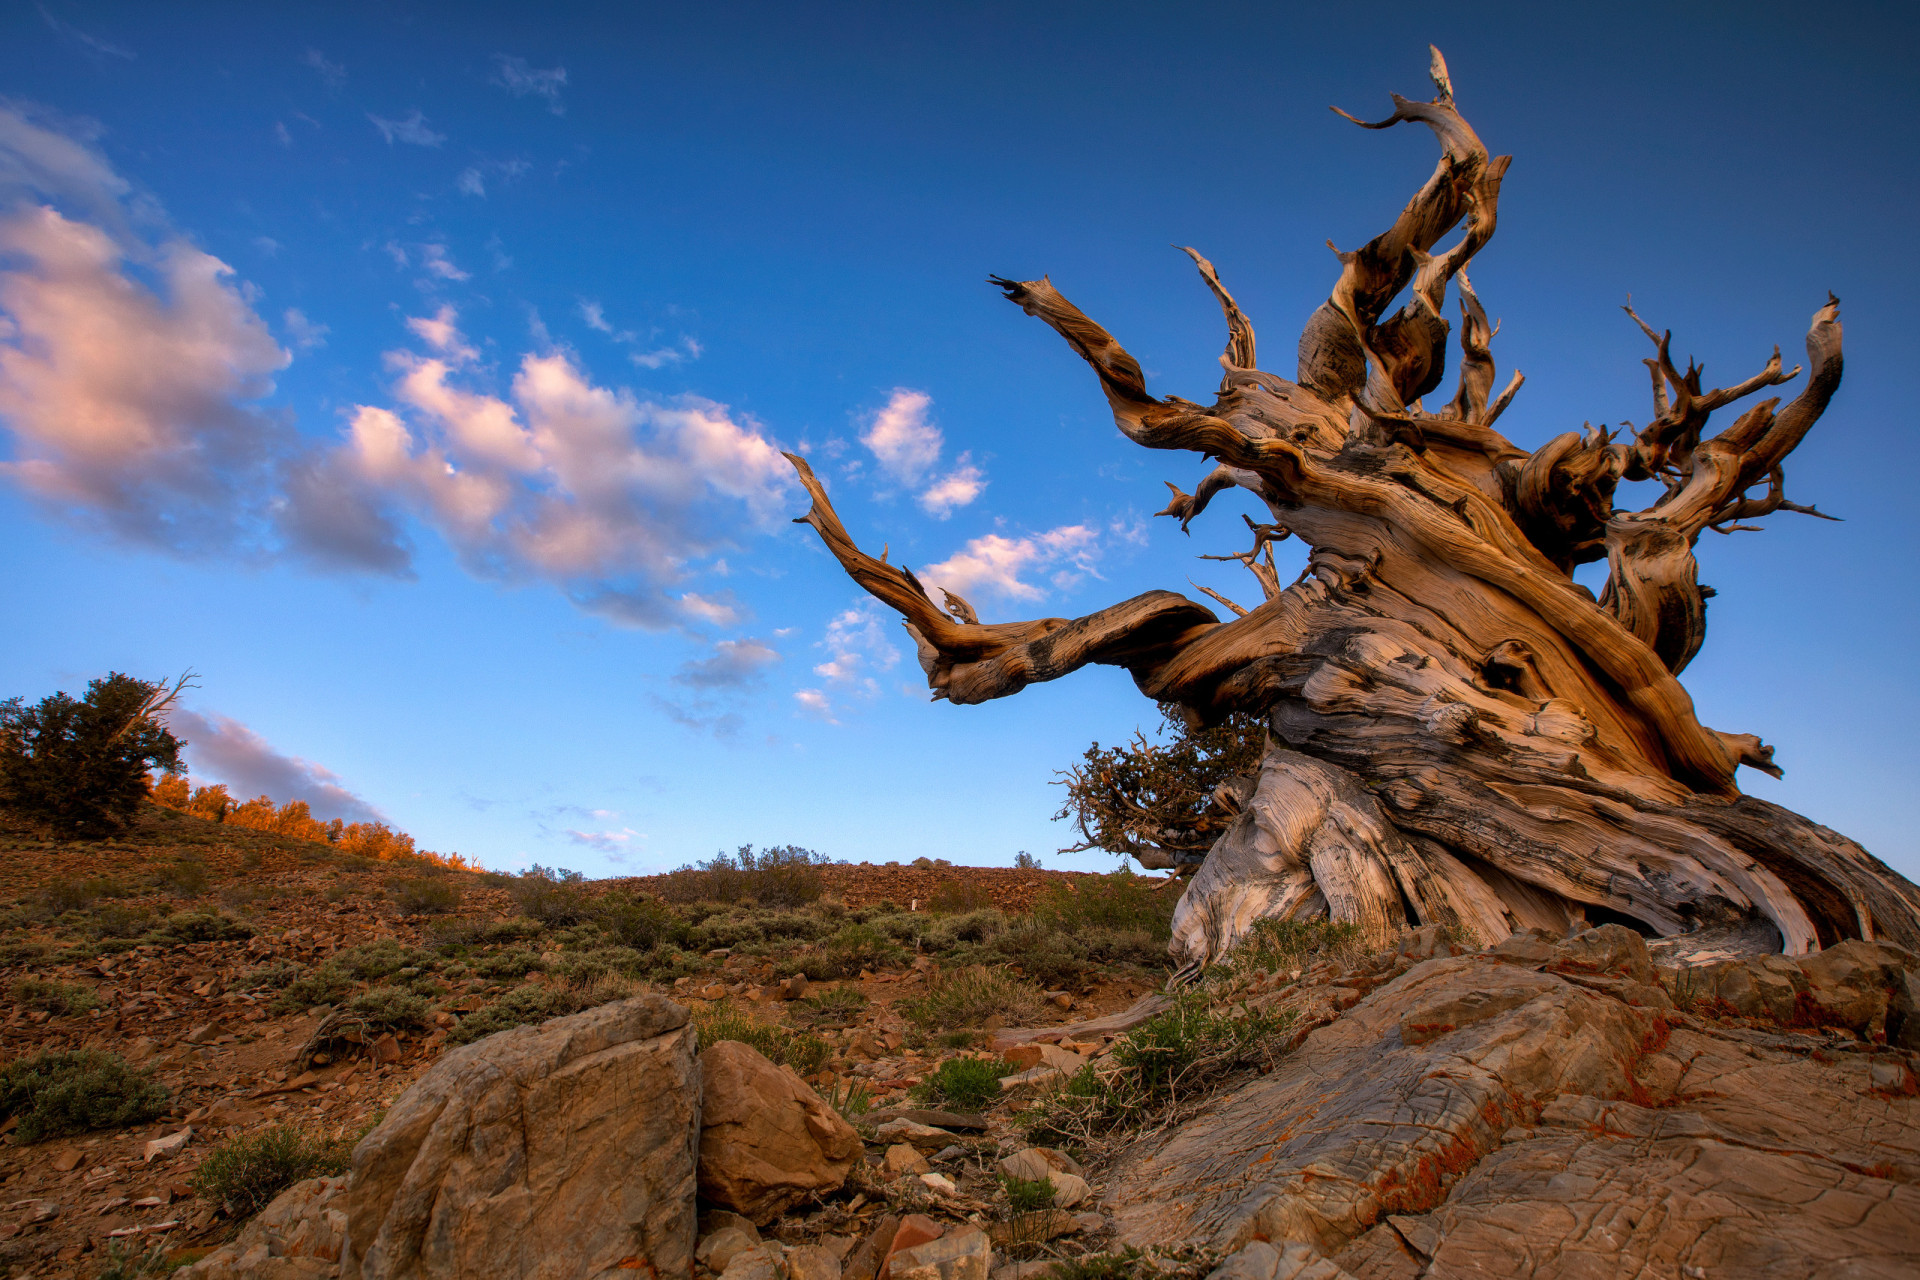 <p>Le pin de Bristlecone (<em>Pinus longaeva</em>) est l'espèce d'arbre la plus ancienne qui existe, avec plus de 5 000 ans d'âge. On le trouve dans les hautes montagnes de Californie, du Nevada et de l'Utah.</p><p><a href="https://www.msn.com/fr-fr/community/channel/vid-7xx8mnucu55yw63we9va2gwr7uihbxwc68fxqp25x6tg4ftibpra?cvid=94631541bc0f4f89bfd59158d696ad7e">Suivez-nous et accédez tous les jours à du contenu exclusif</a></p>